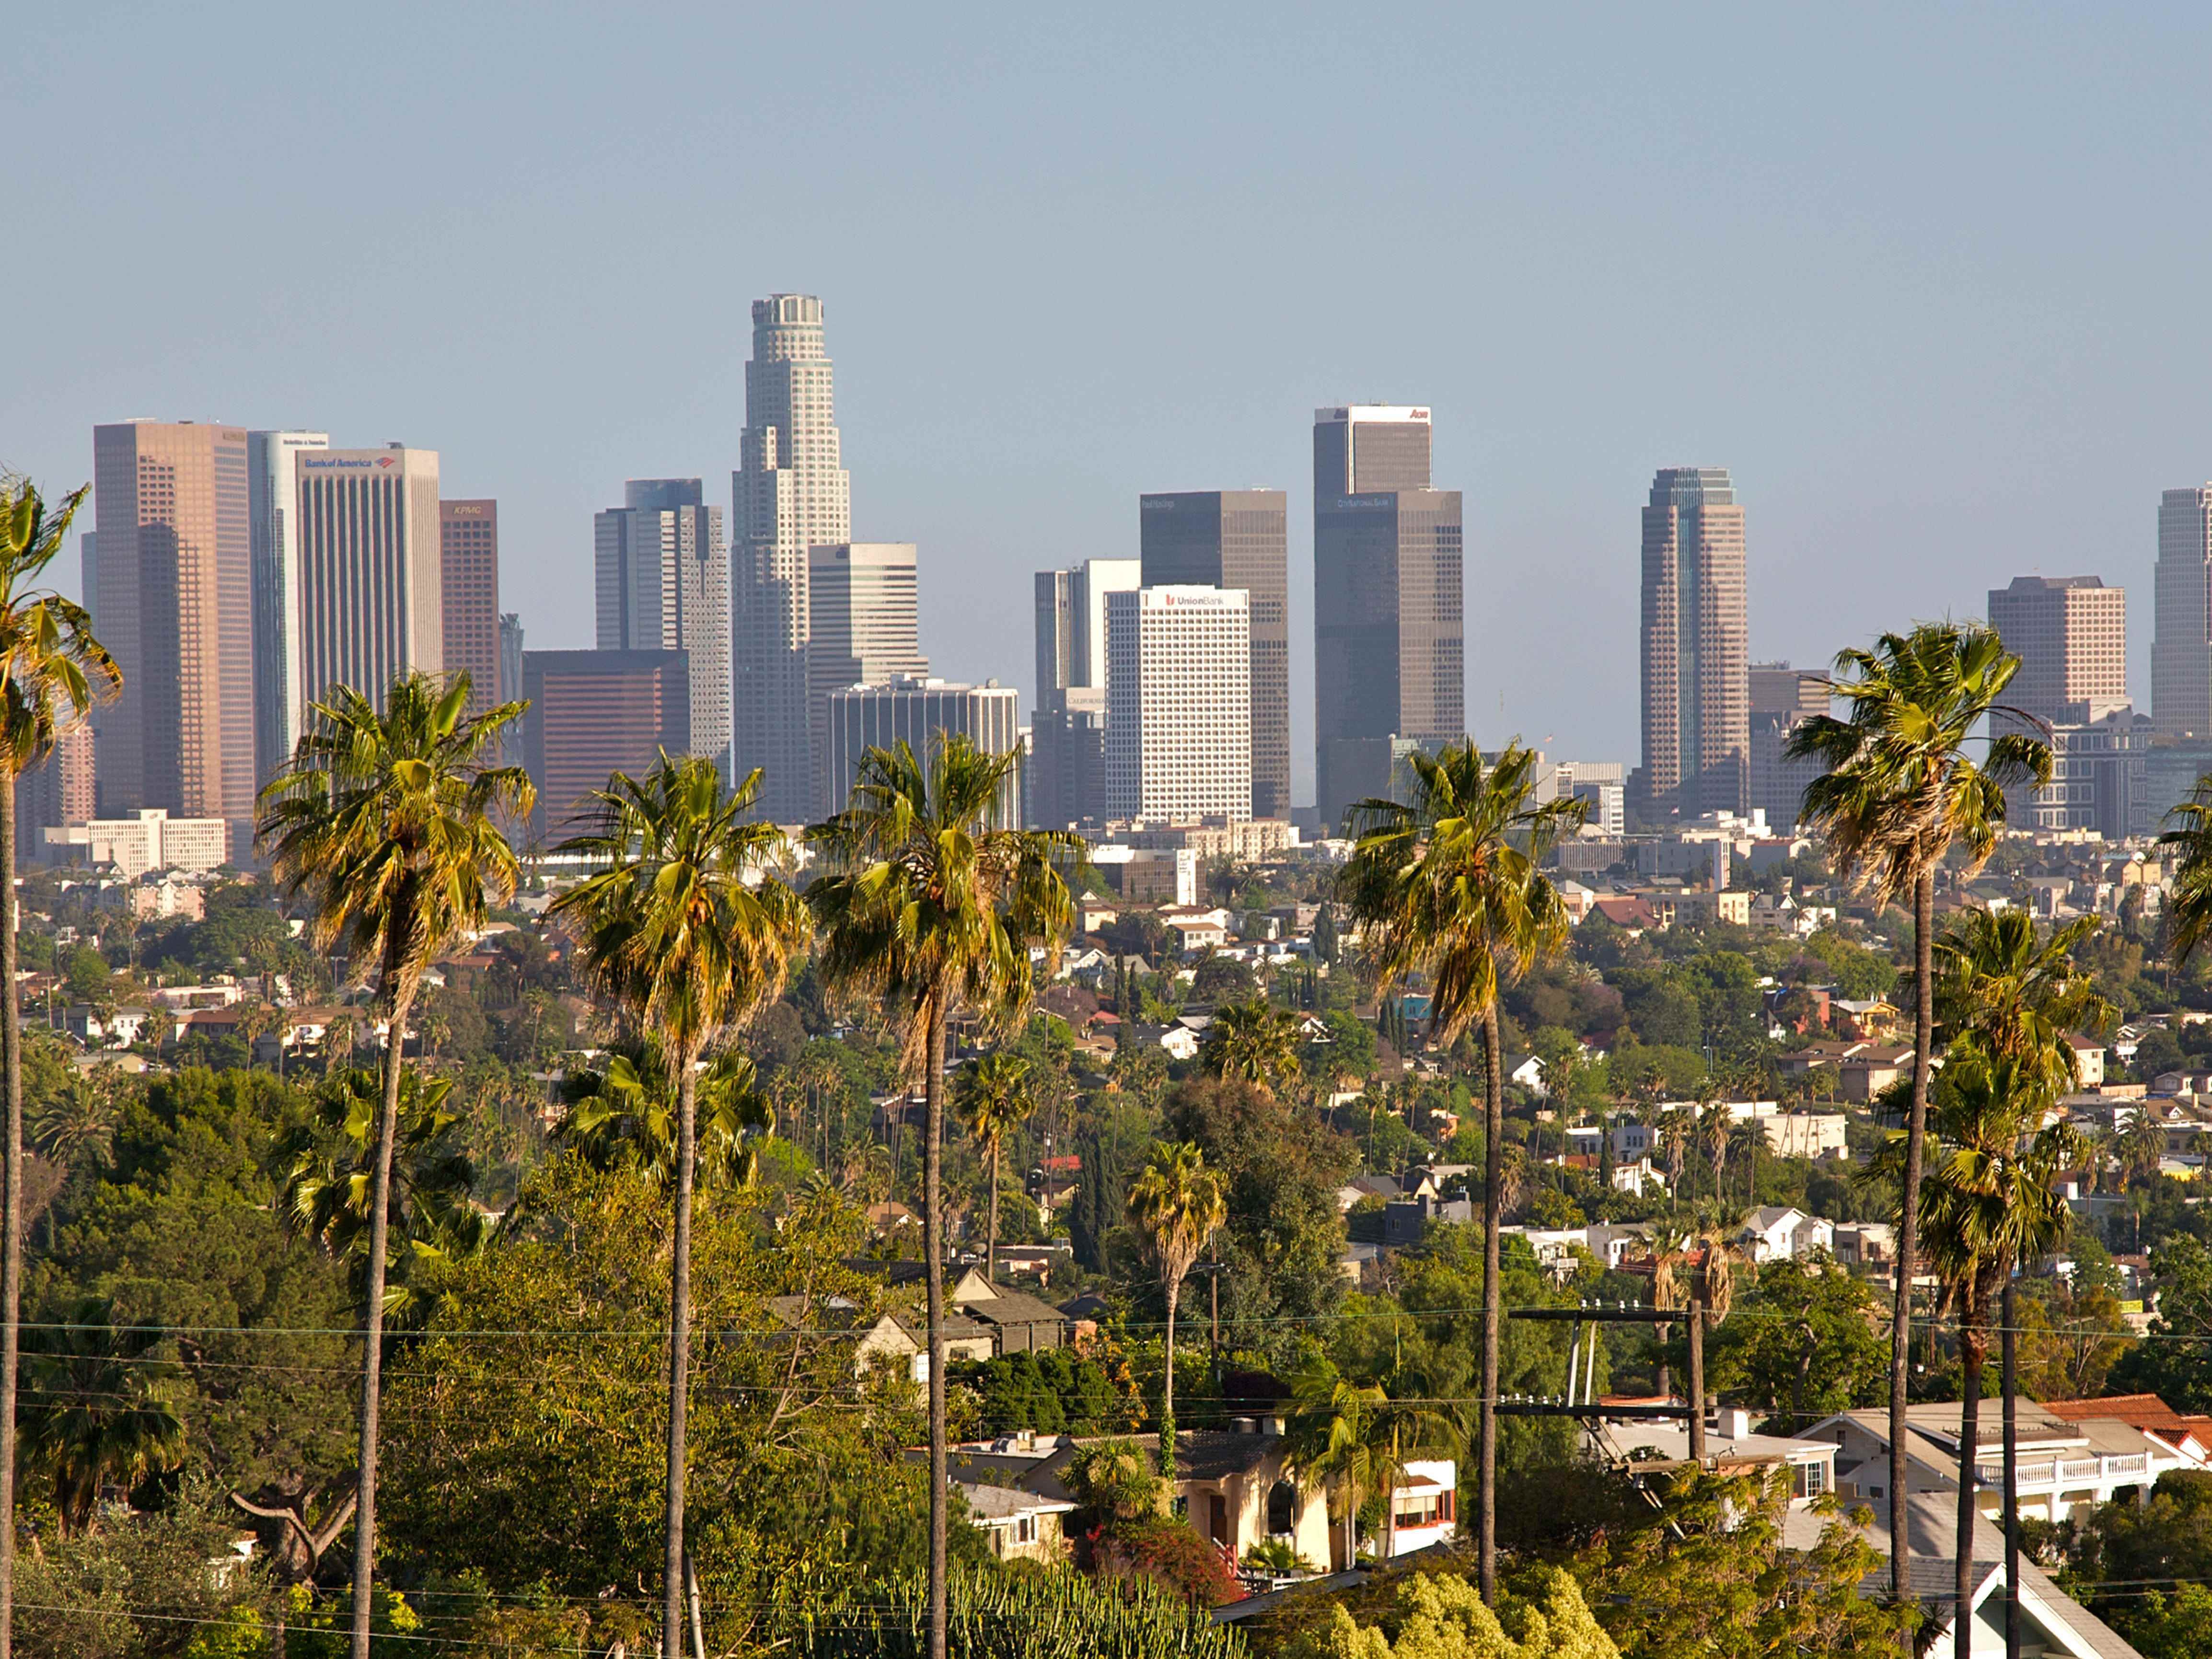 Stadtbild, Wolkenkratzer, Bäume in Los Angeles